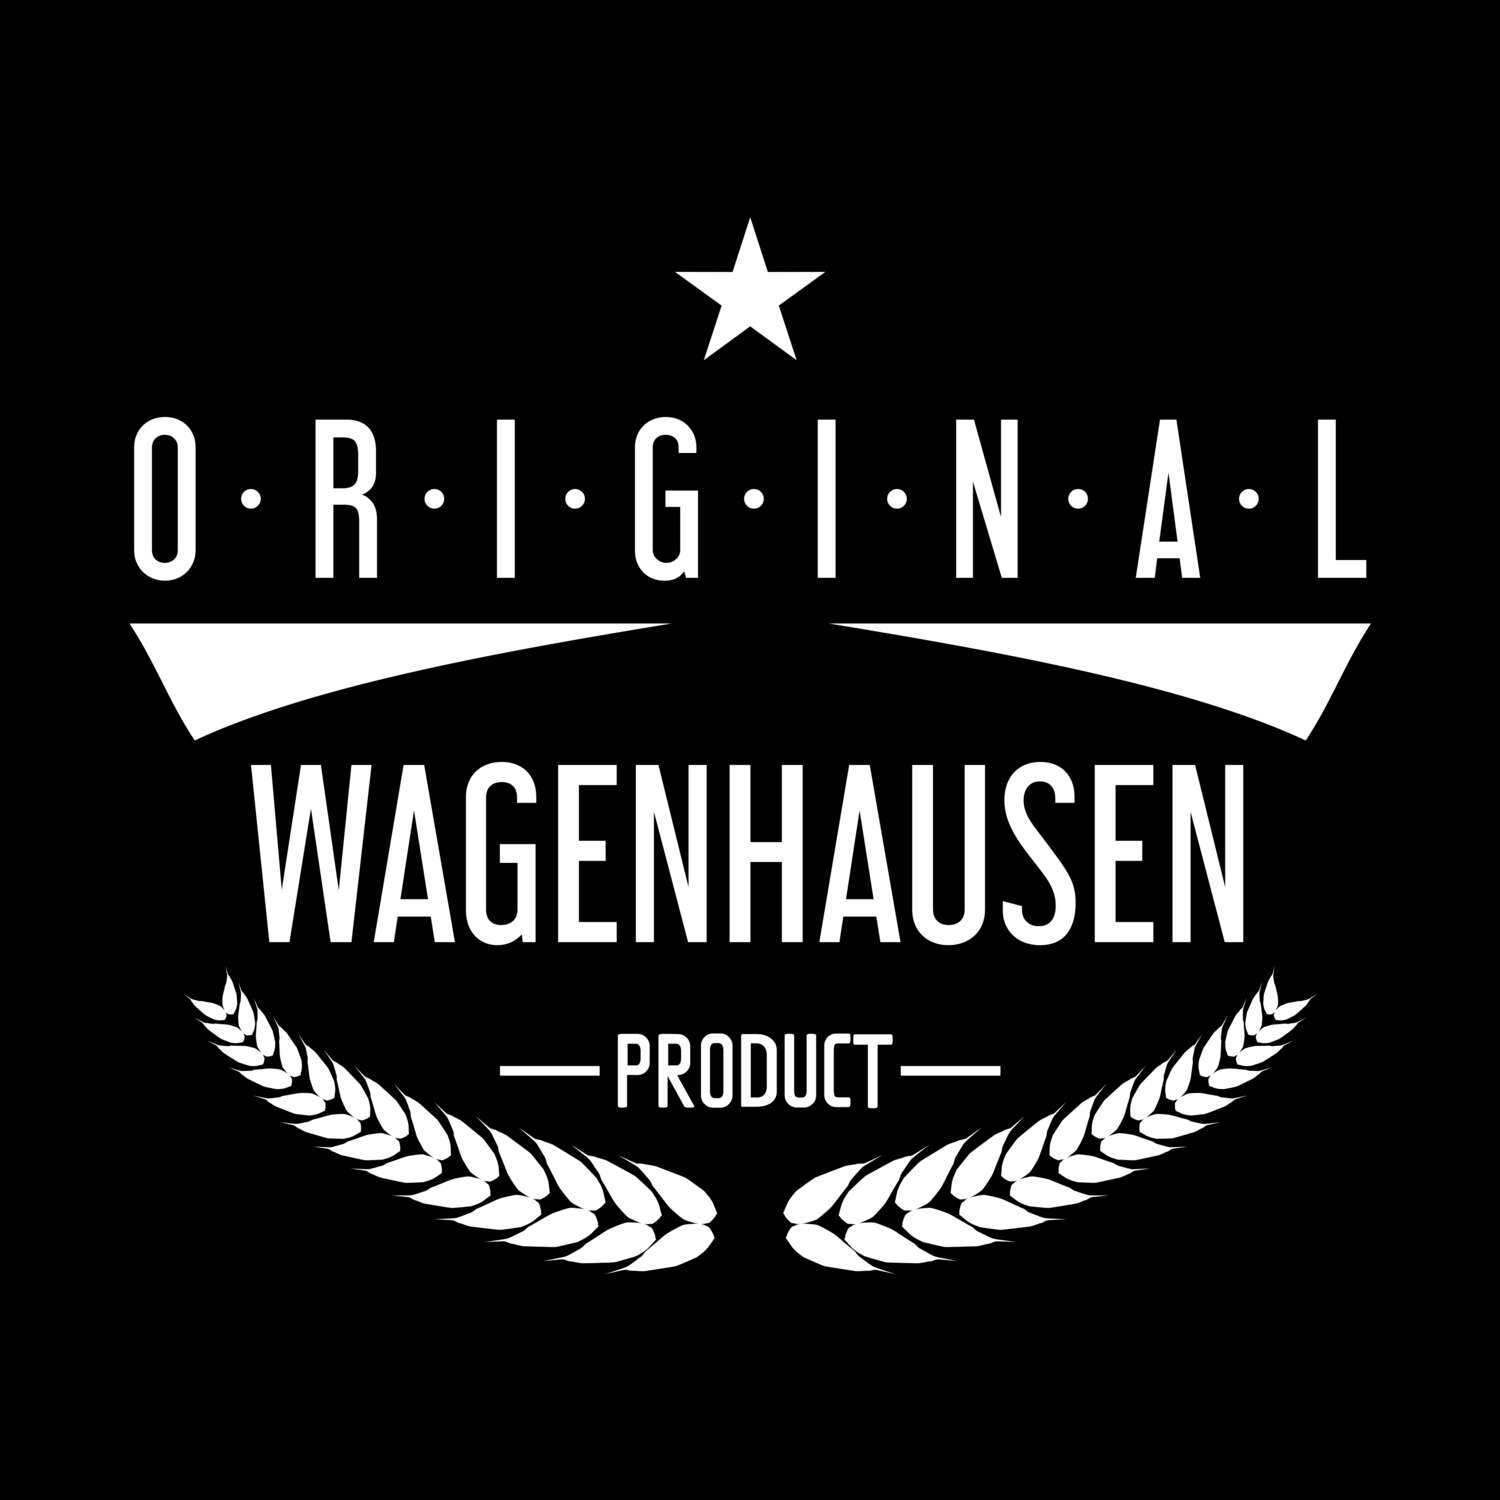 Wagenhausen T-Shirt »Original Product«